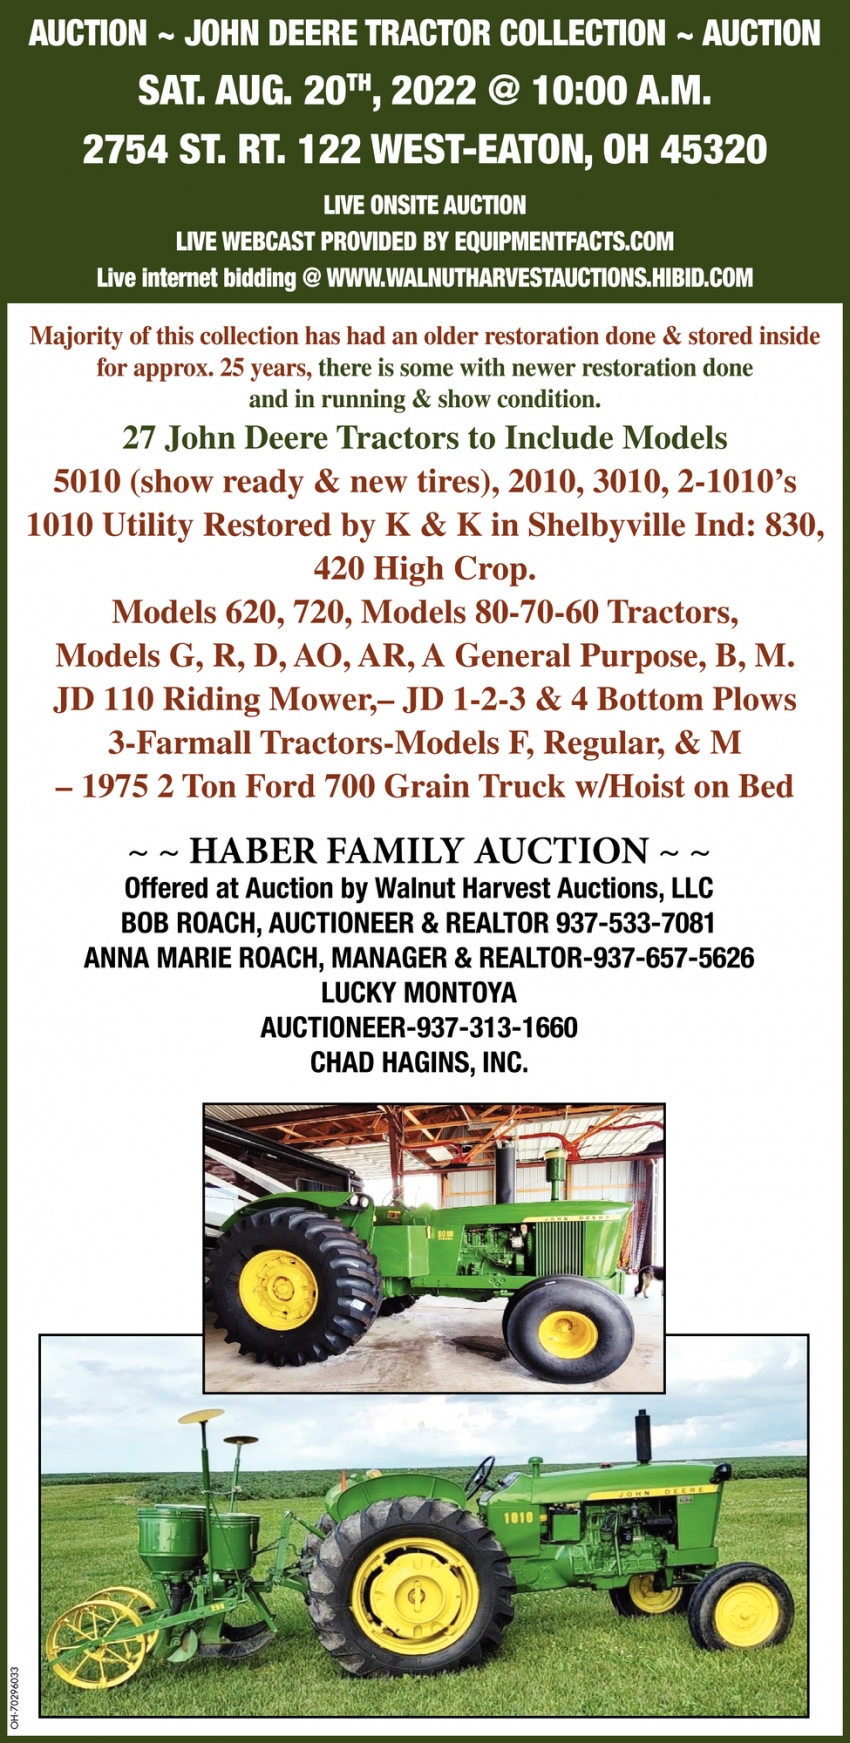 John Deere Tractor Collection